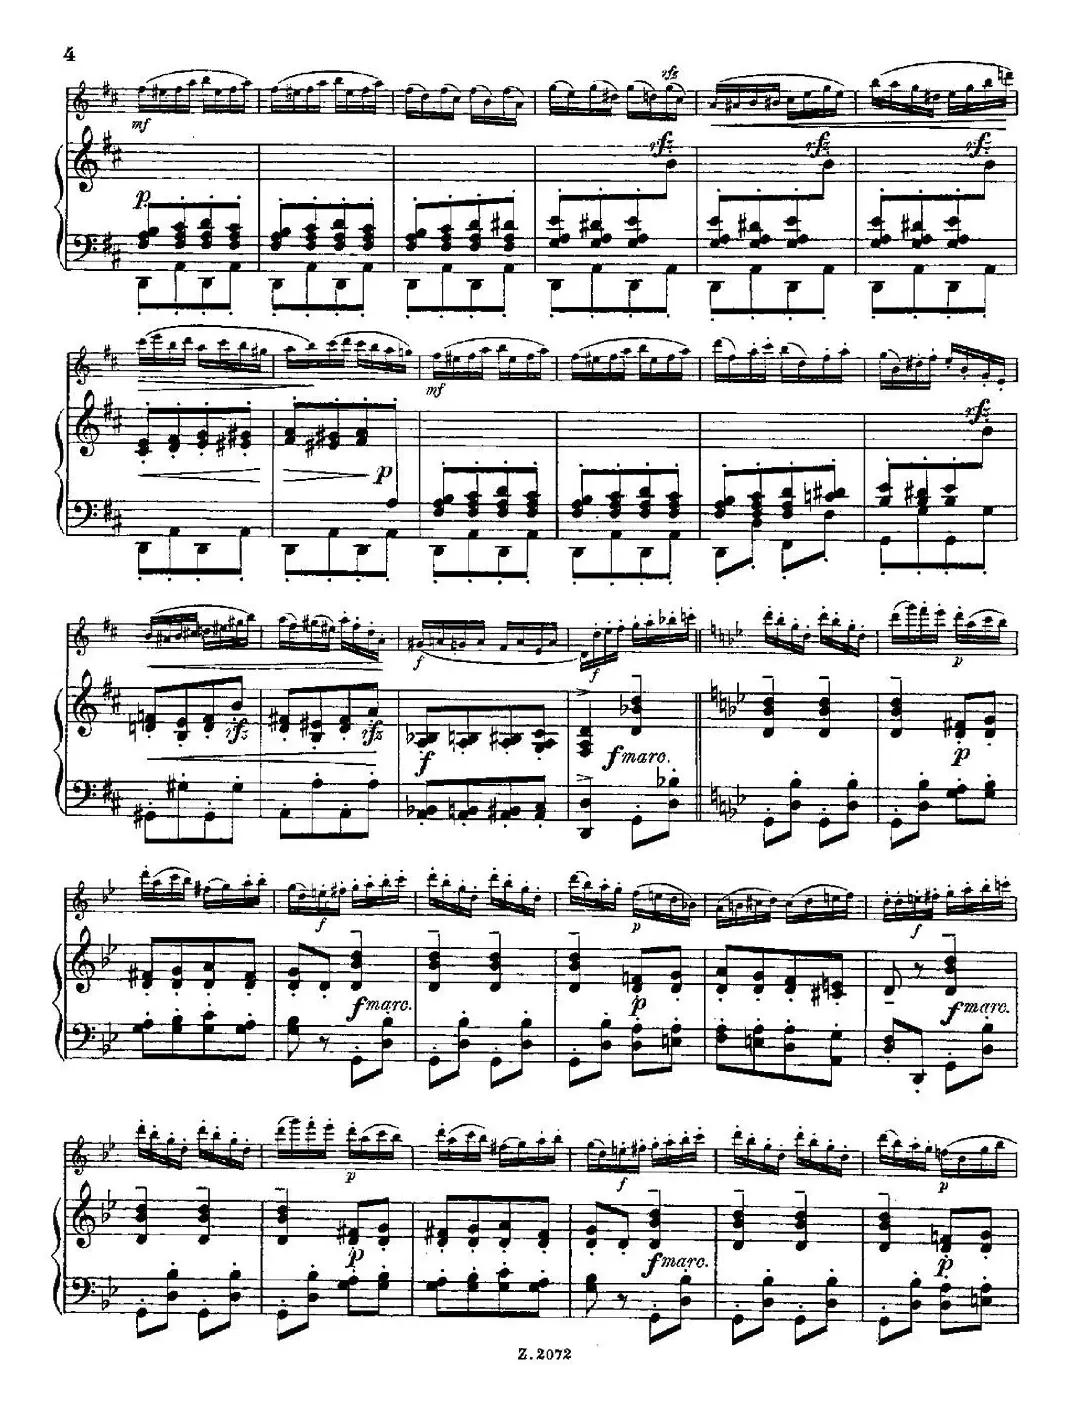 Die Mühle（Op.55 No.4）（长笛+钢琴伴奏）